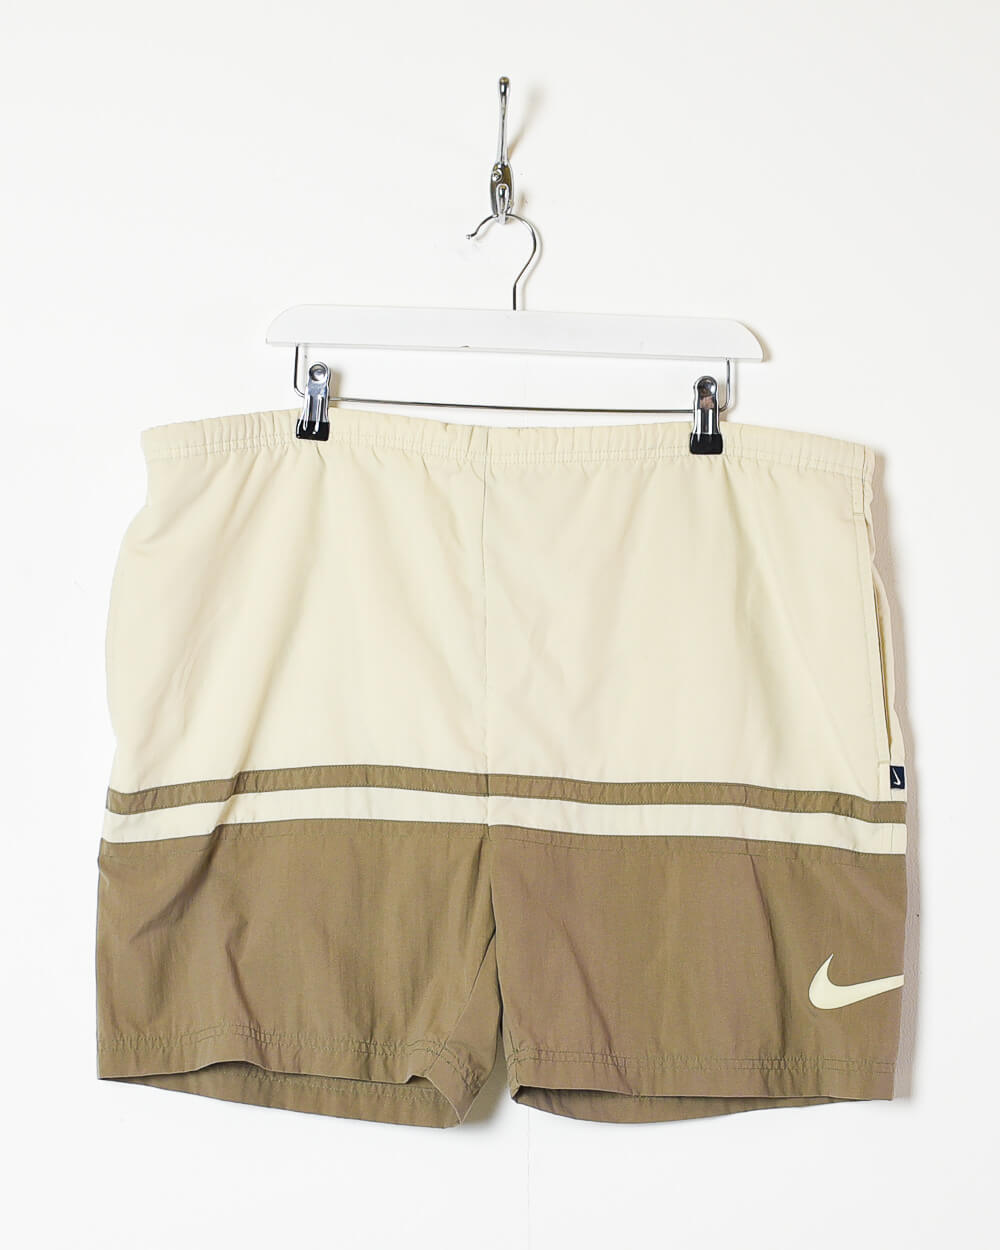 Neutral Nike Shorts - Large